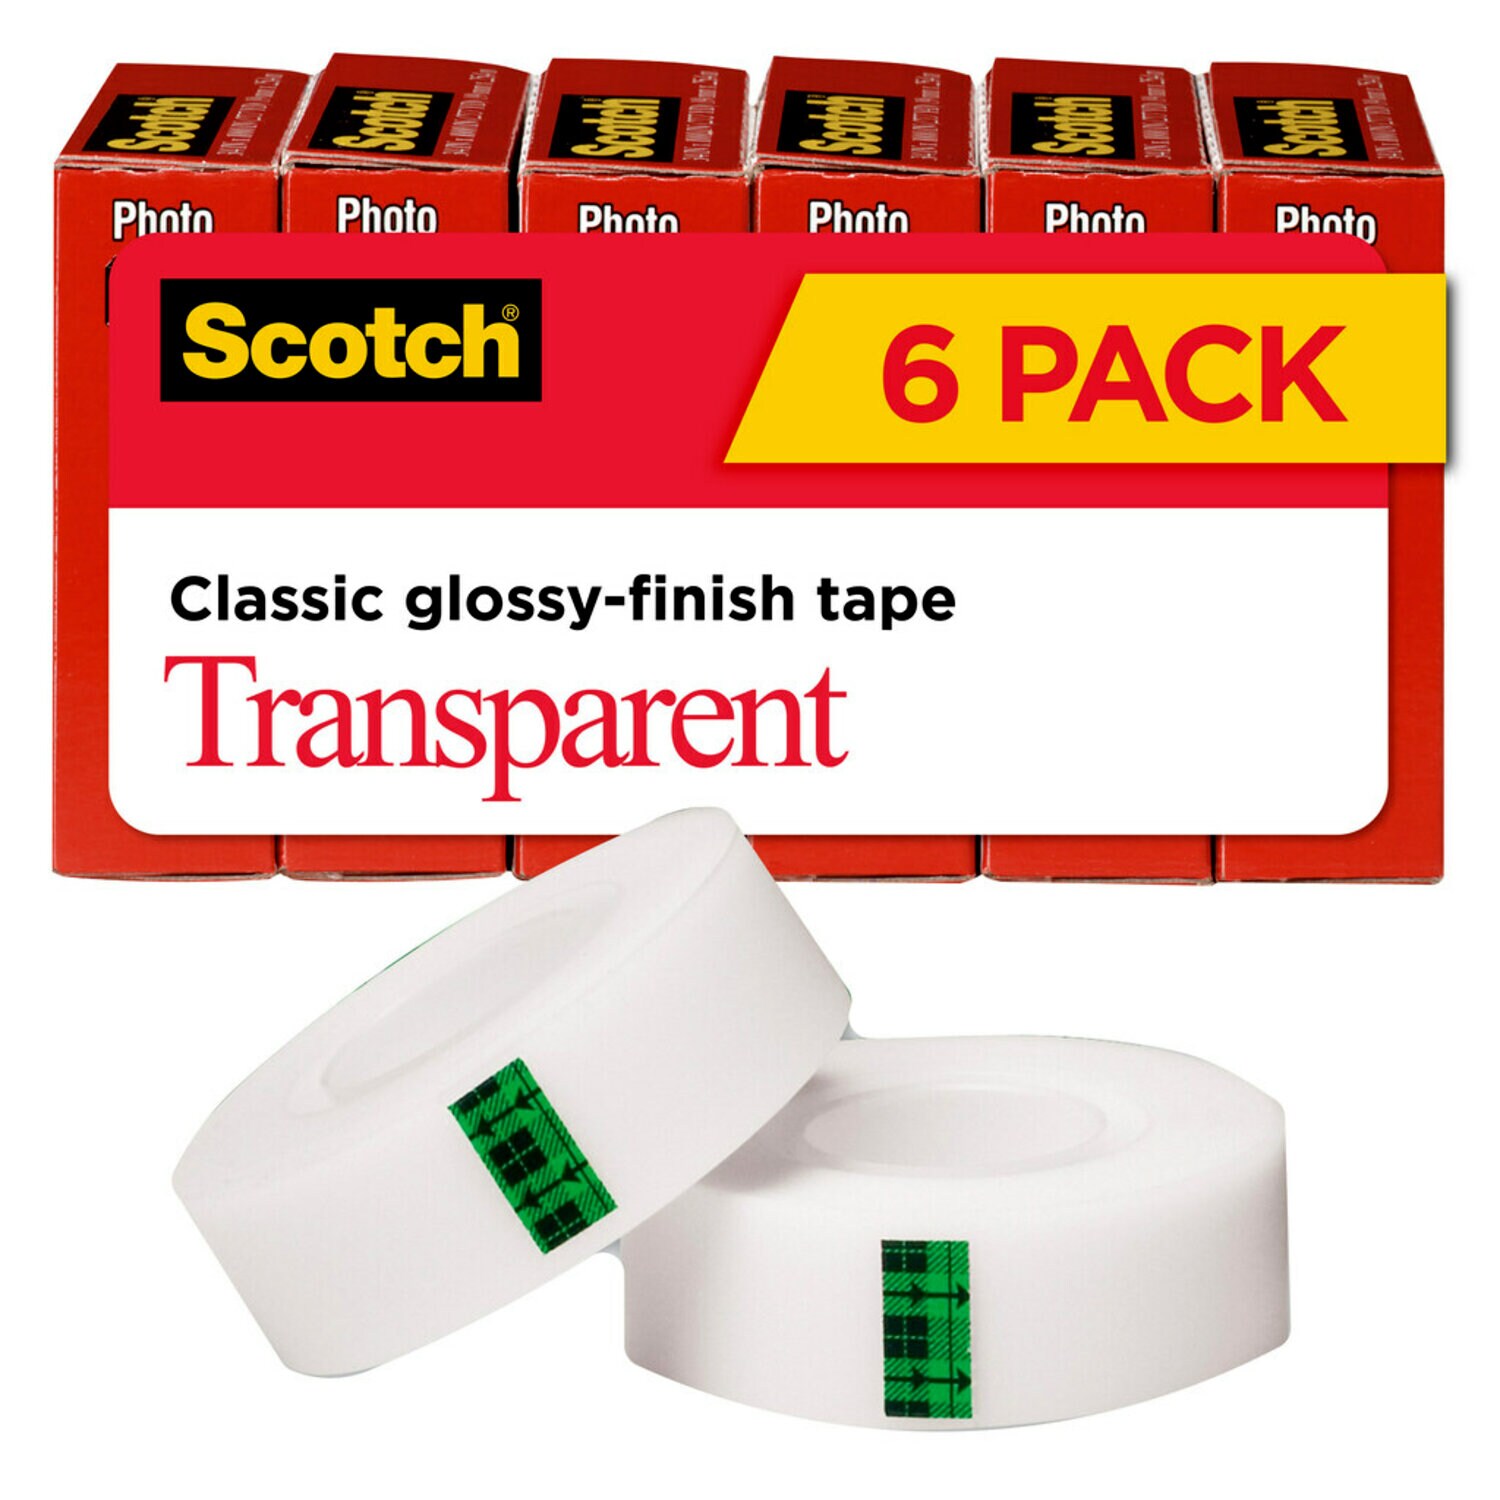 7010303566 - Scotch Transparent Tape 600K6, Clear, 3/4 in. x 1000 in, 6 rolls per
Package